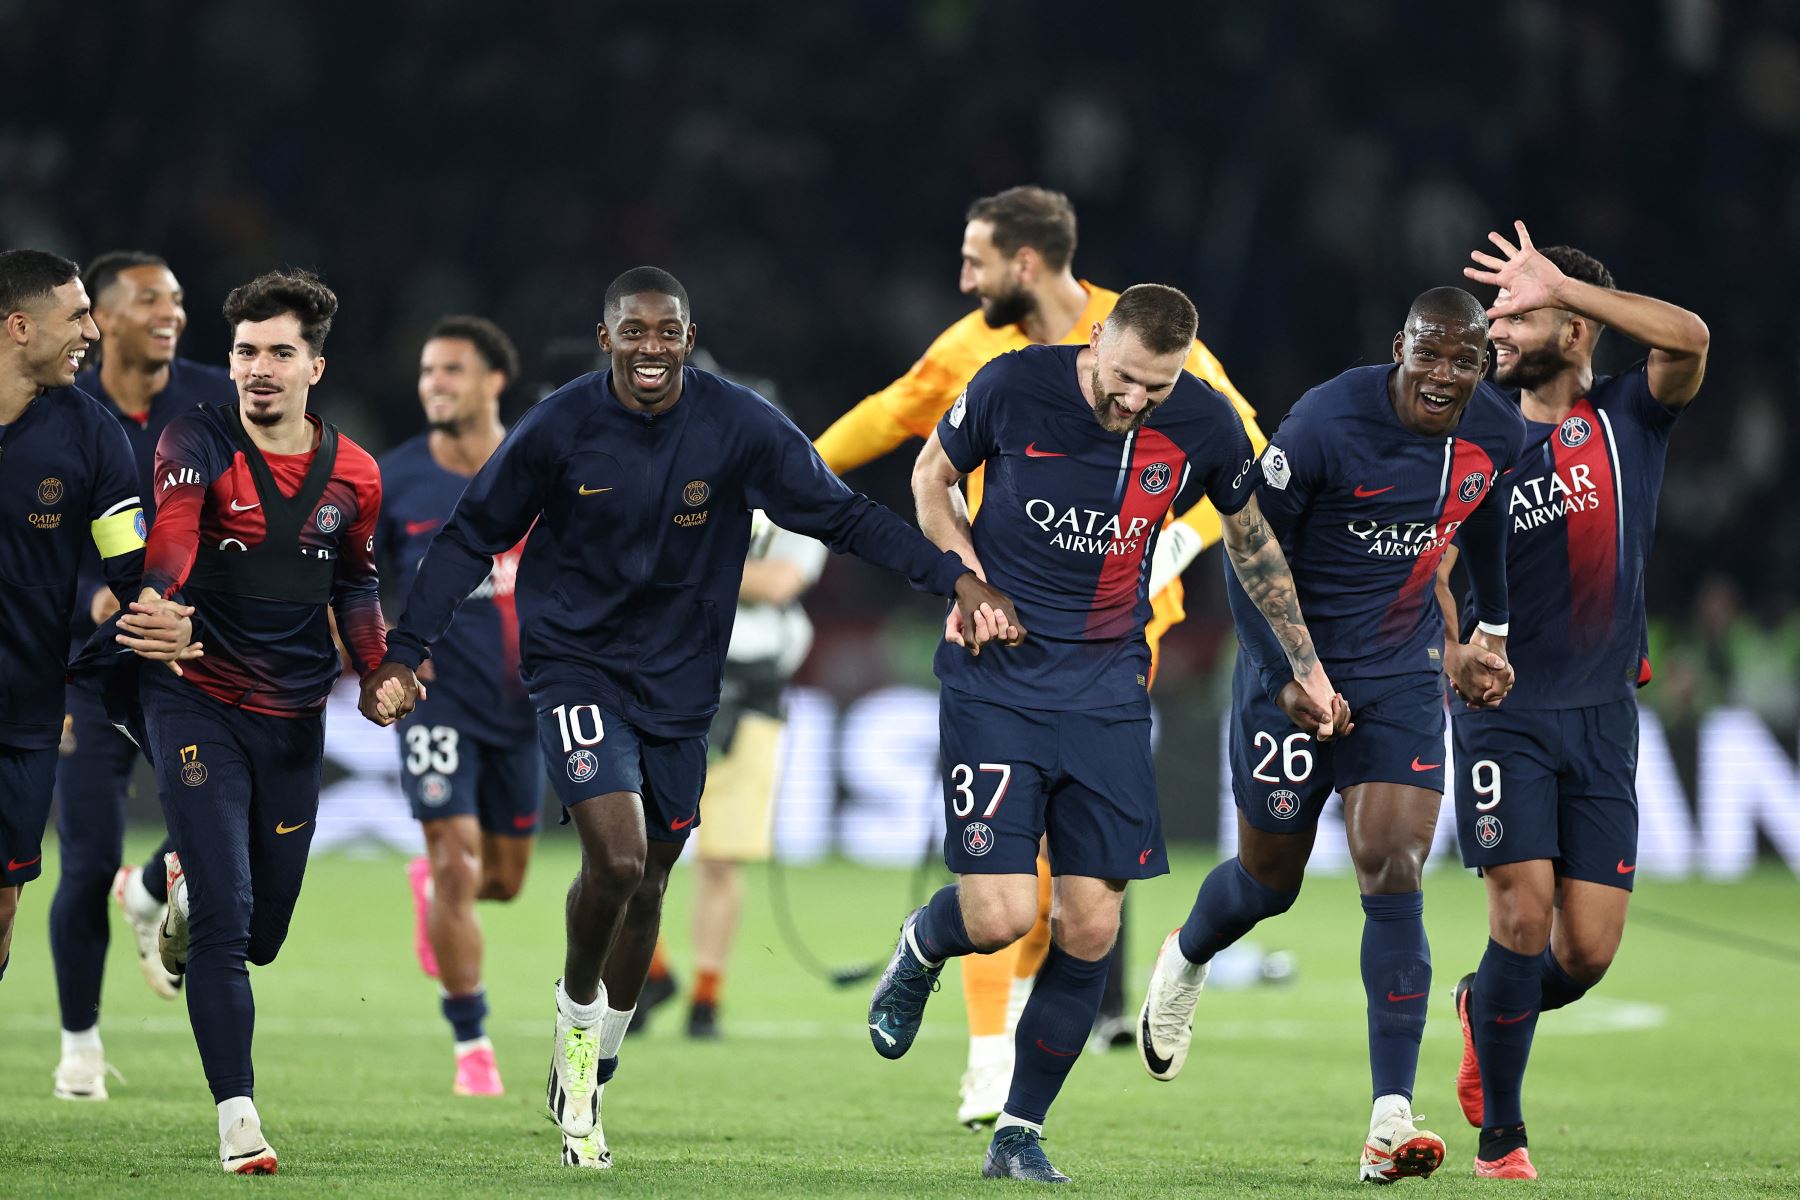 Los jugadores del PSG celebran con sus seguidores tras ganar el partido de fútbol francés L1 entre el Paris Saint-Germain  y el Olympique de Marseille  en el estadio Parc des Princes de París.
Foto: AFP